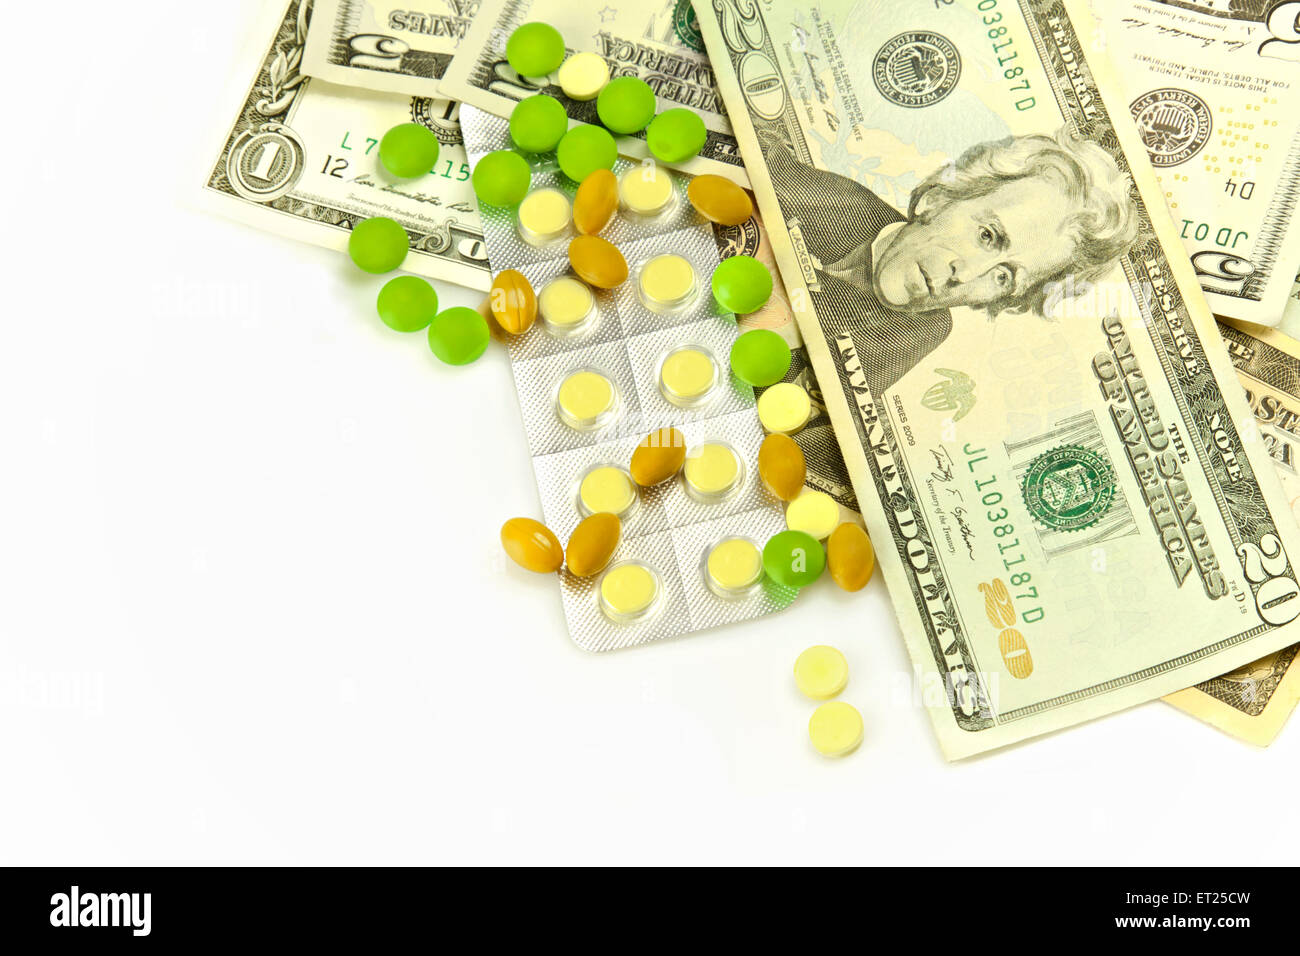 Les soins de santé, des pilules et financièrement coûteux médical Banque D'Images